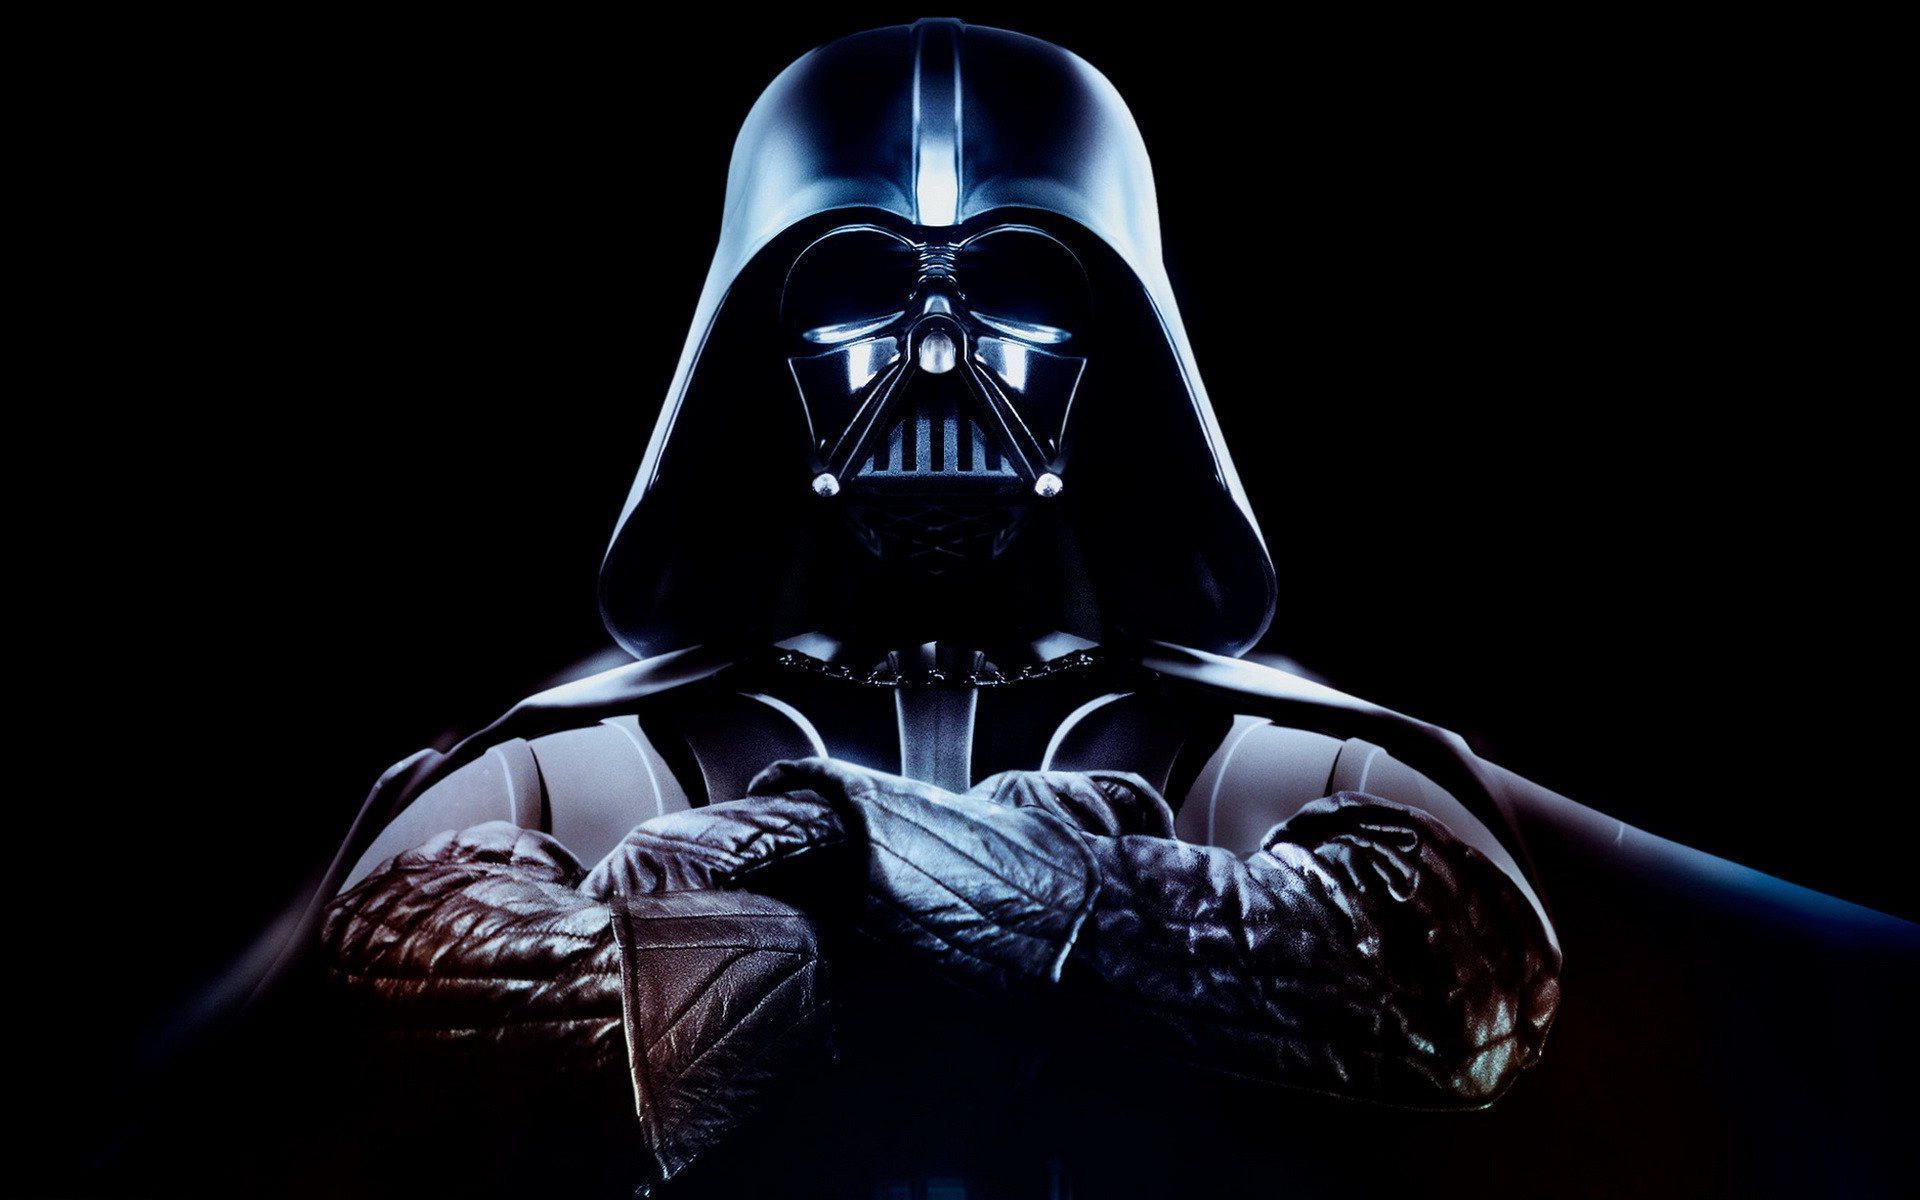 Darth Vader Wallpaper. Star wars .com